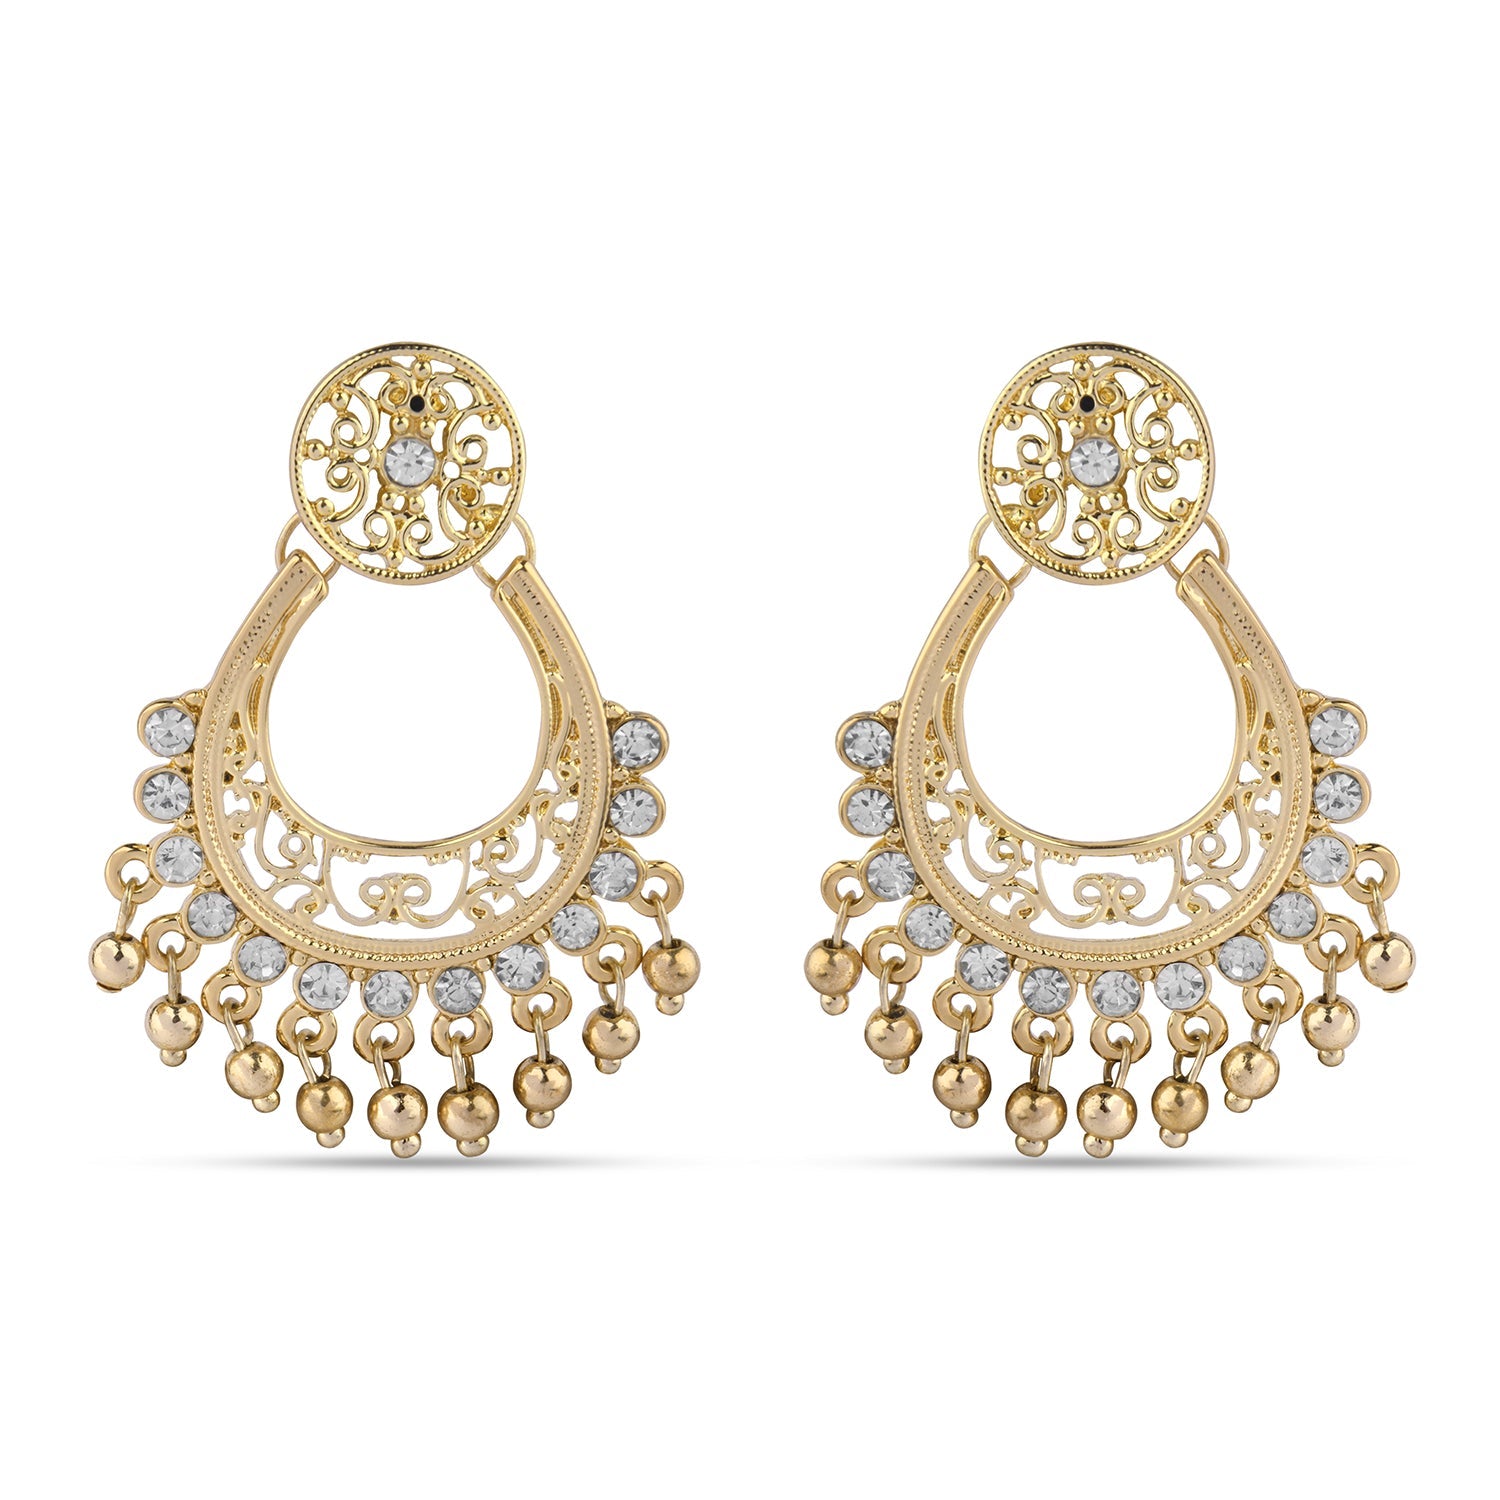 Accessorize London Women's Gold Filigree Chandbali Earring